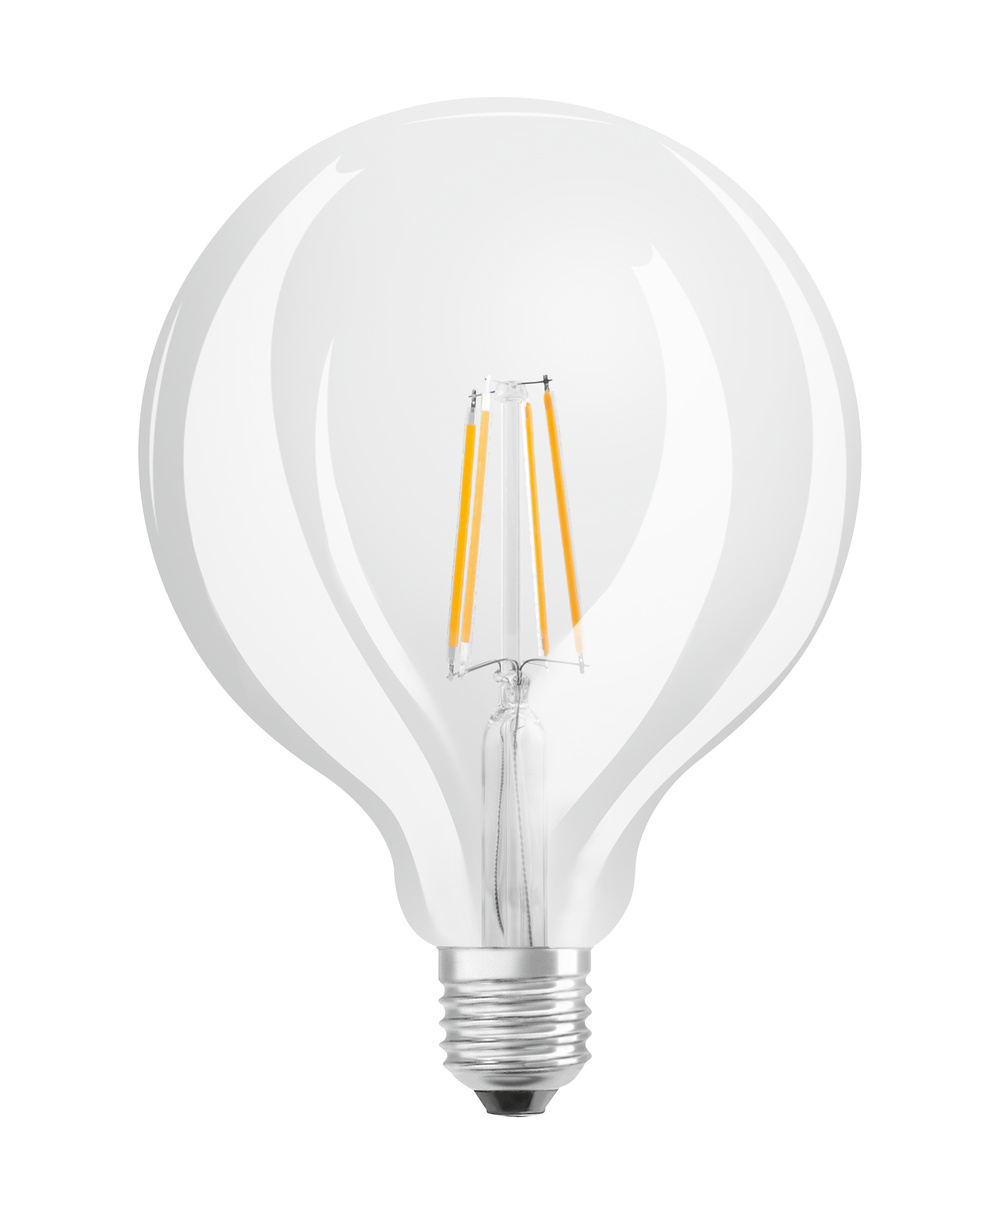 Ledvance LED lamp PARATHOM CLASSIC GLOBE 60  6.5 W/2700 K E27  - 4058075591431